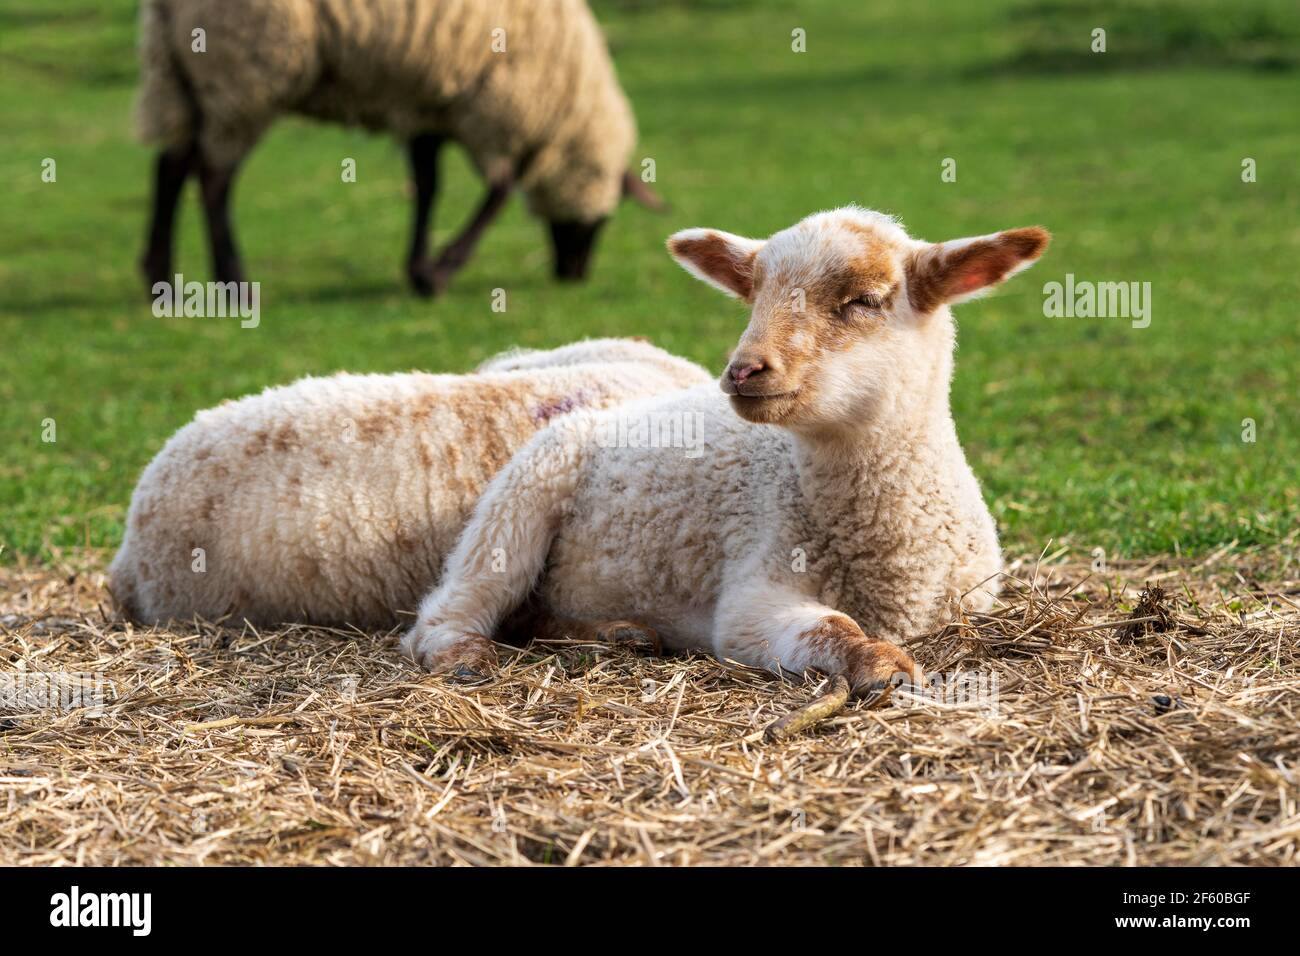 Portrait en gros plan d'un agneau blanc et brun à l'aspect fatigué avec des yeux à moitié fermés assis sur une paille sur un pré vert. Concept d'agriculture à autonomie libre. Banque D'Images